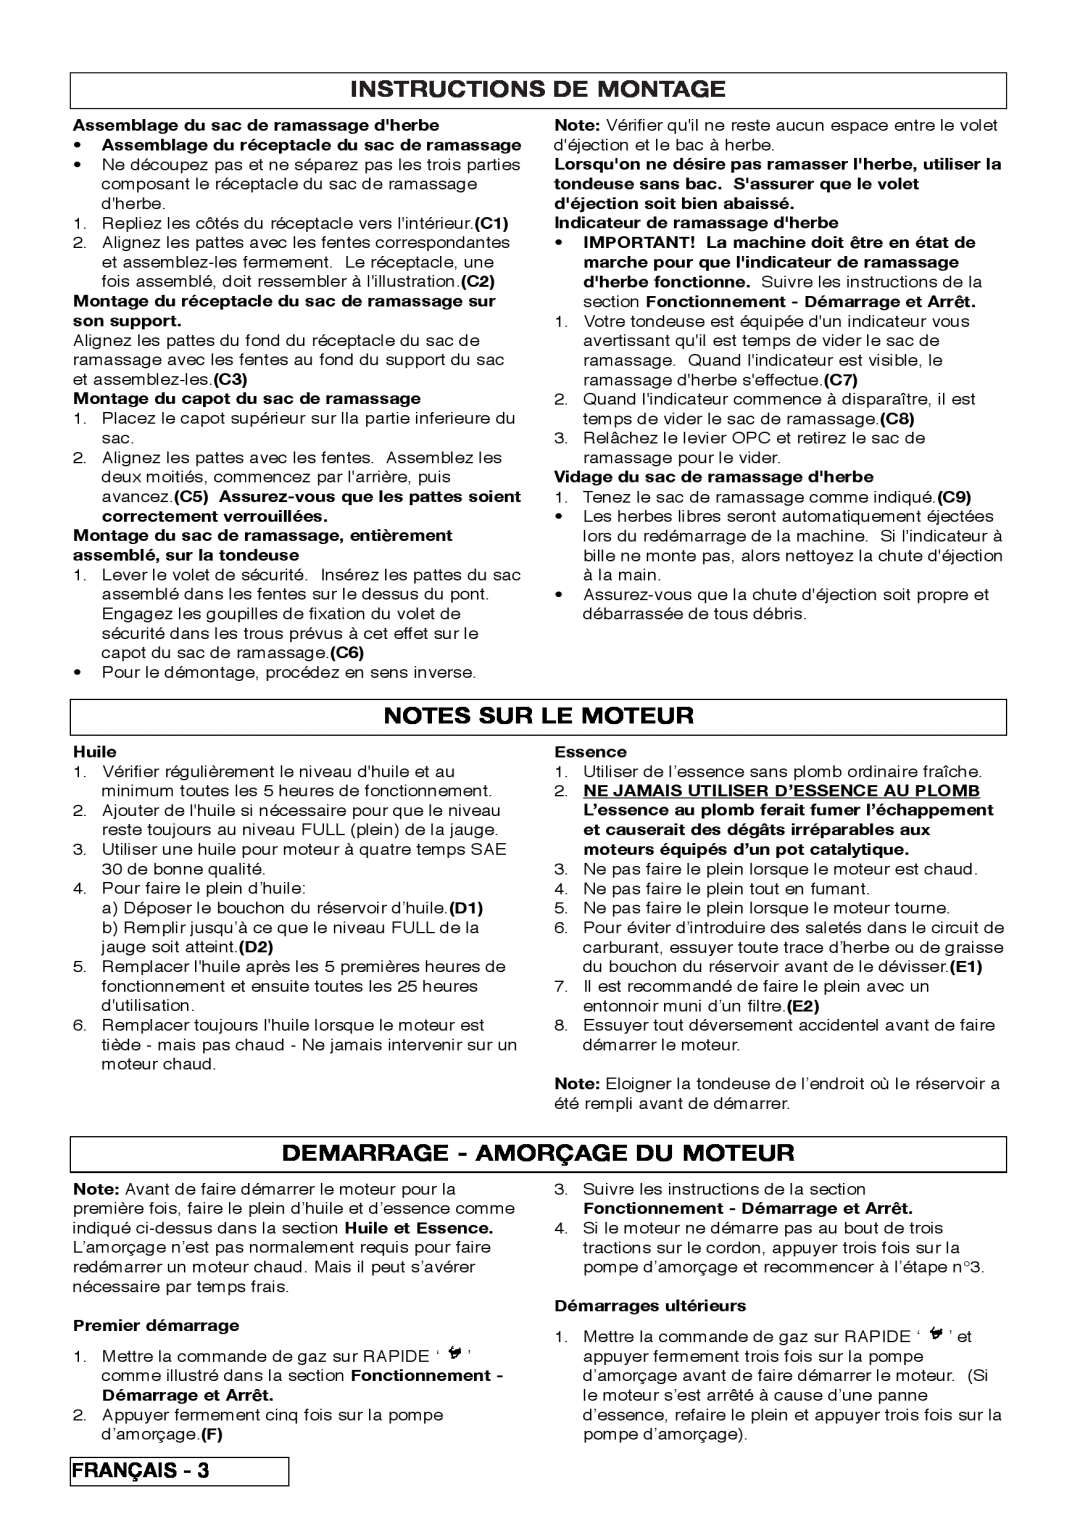 Husqvarna R 43SE manual Instructions De Montage, Notes Sur Le Moteur, Demarrage - Amorçage Du Moteur 